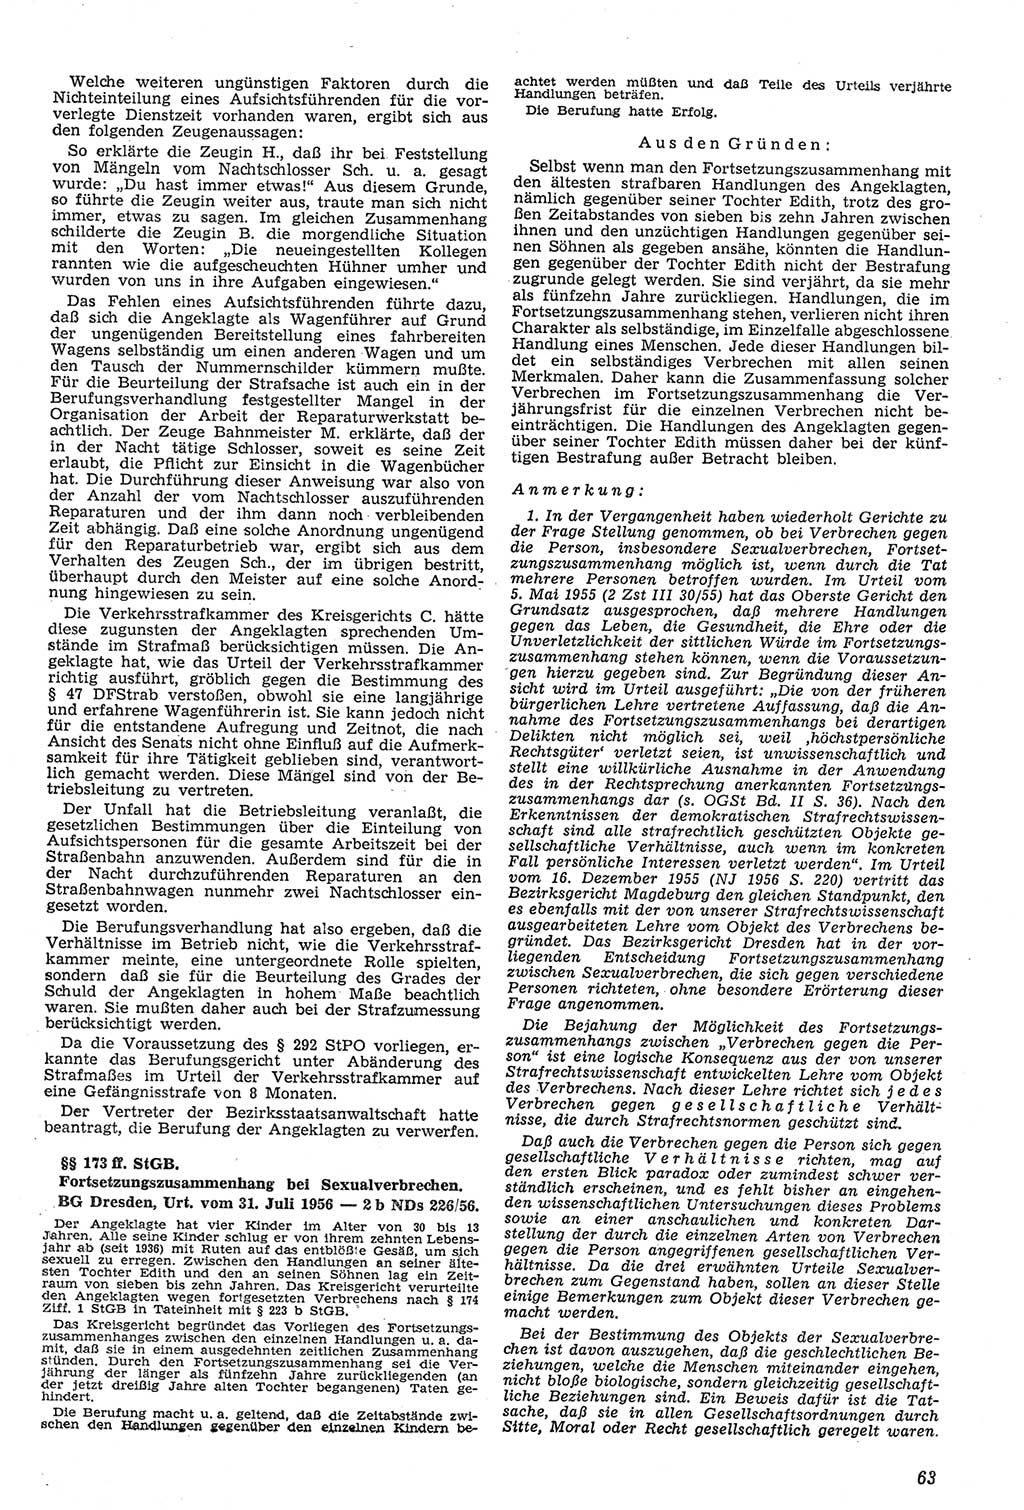 Neue Justiz (NJ), Zeitschrift für Recht und Rechtswissenschaft [Deutsche Demokratische Republik (DDR)], 11. Jahrgang 1957, Seite 63 (NJ DDR 1957, S. 63)